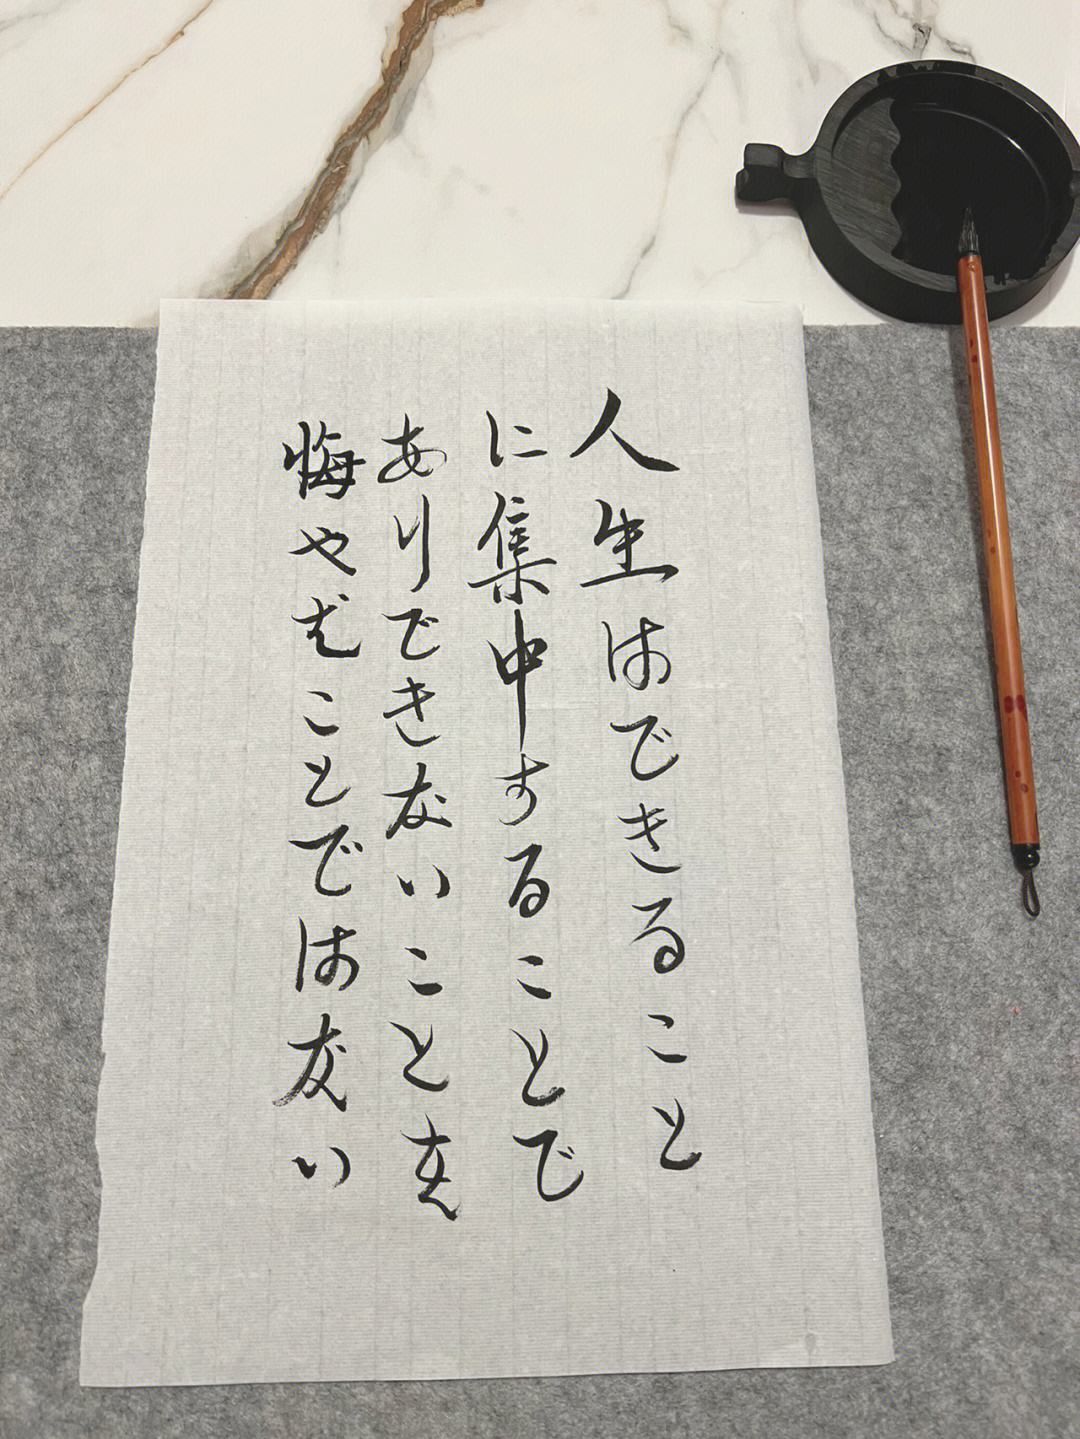 今天第一次写了日语假名书法